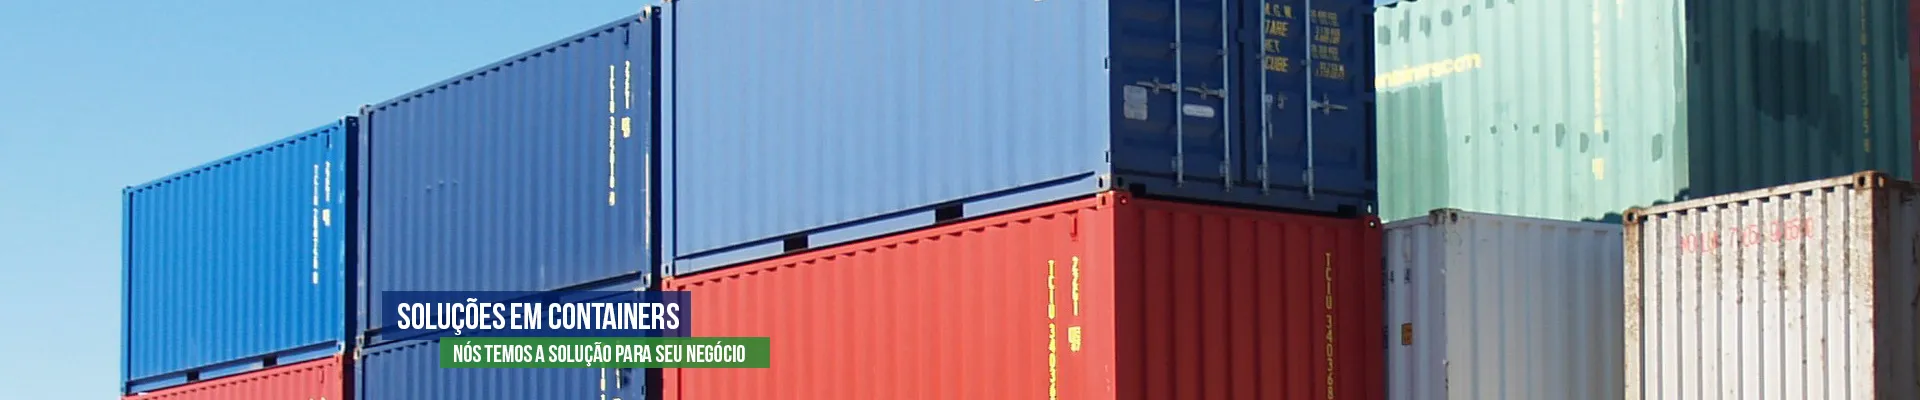 Soluções em Containers